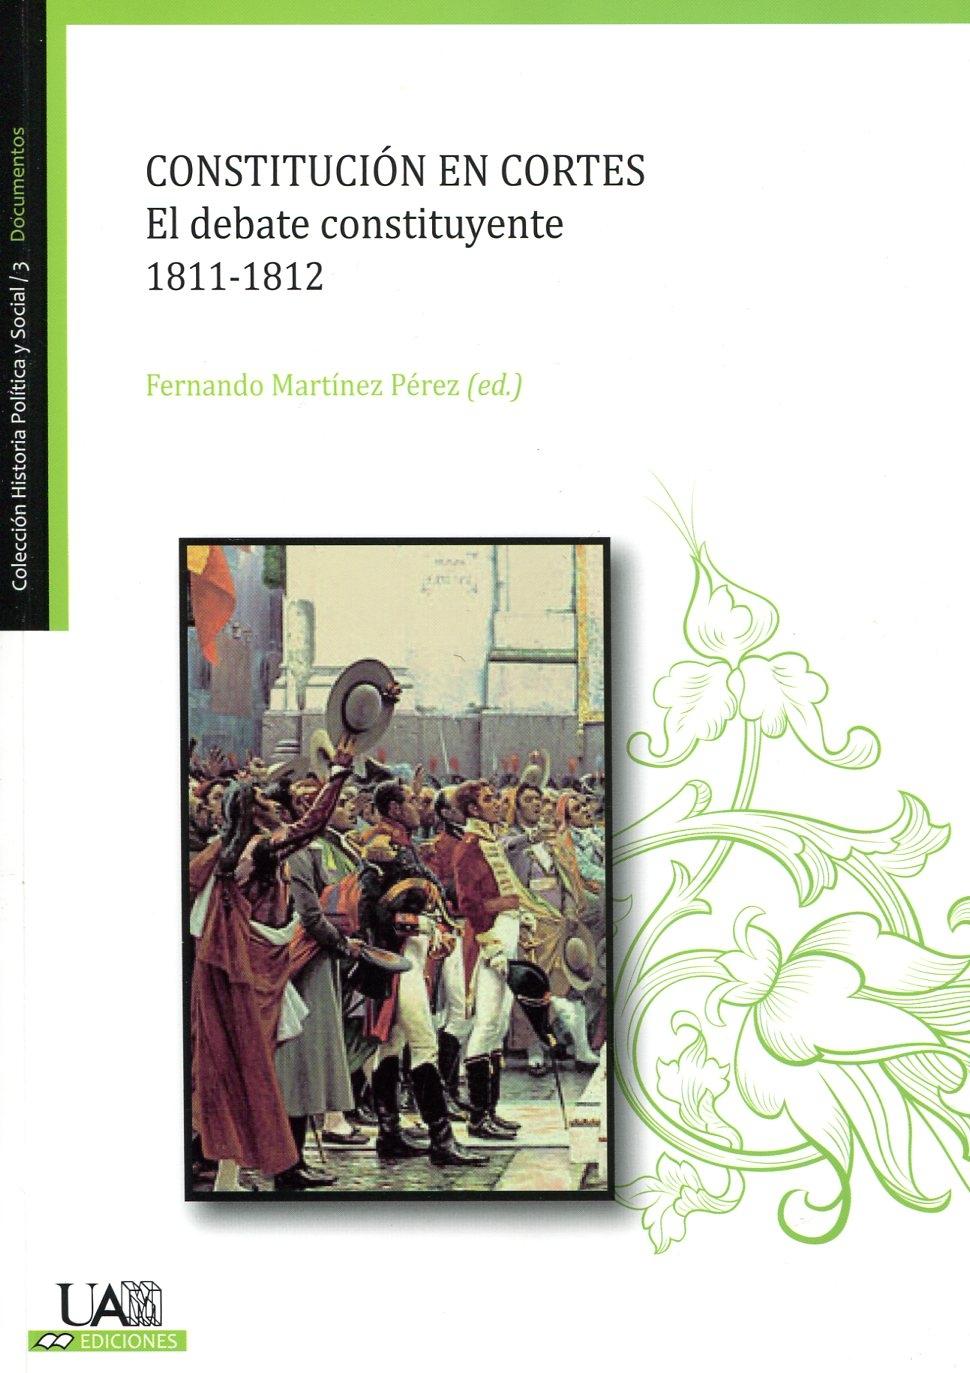 Constitución en cortes, 1811-1812 "el debate constituyente"